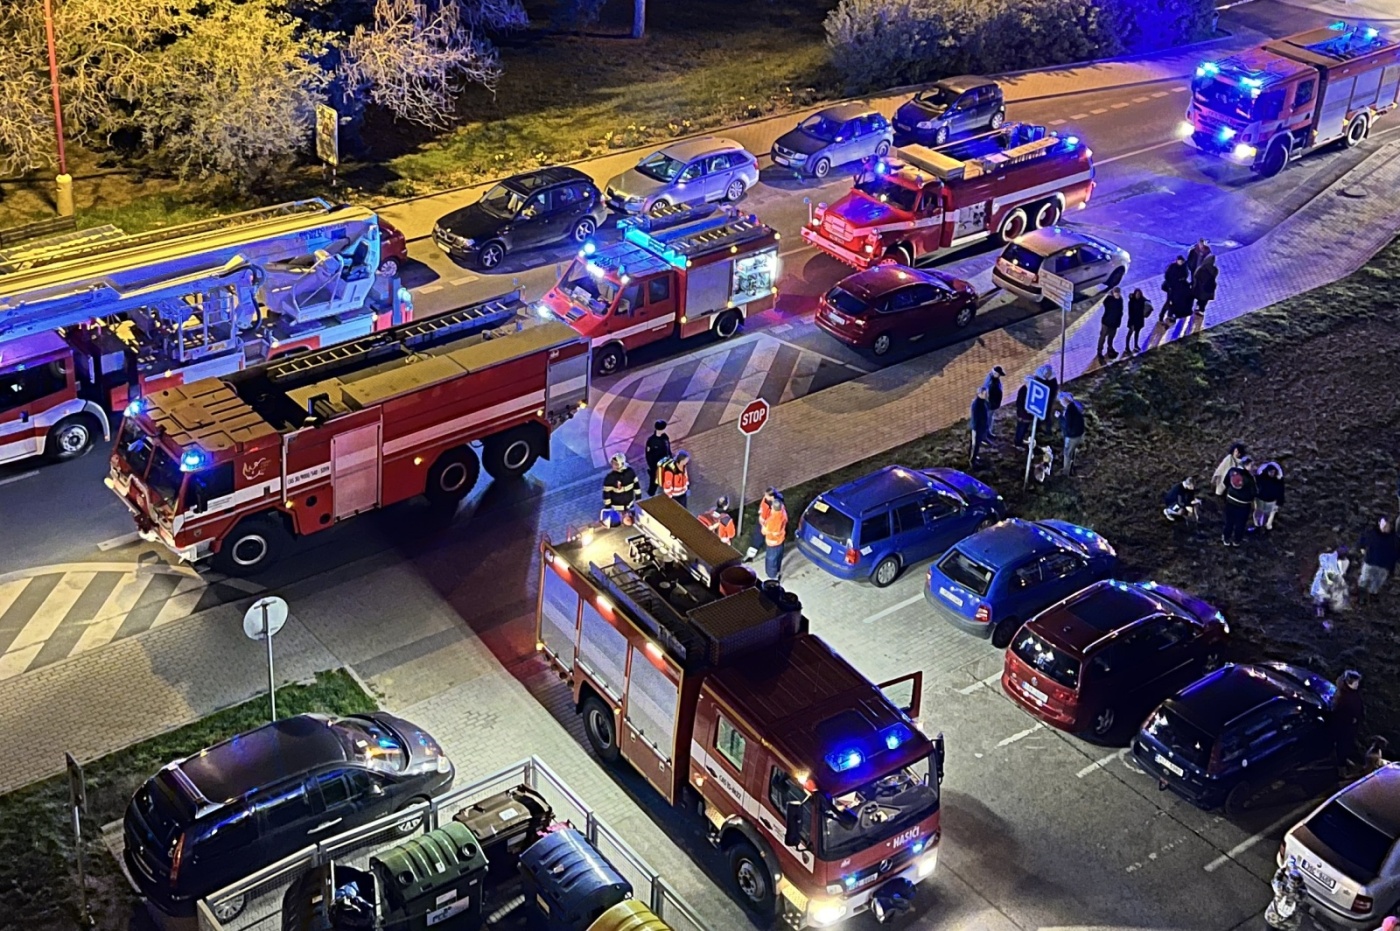 028-Evakuace panelového domu v Neratovicích při dubnovém nočním požáru.jpg